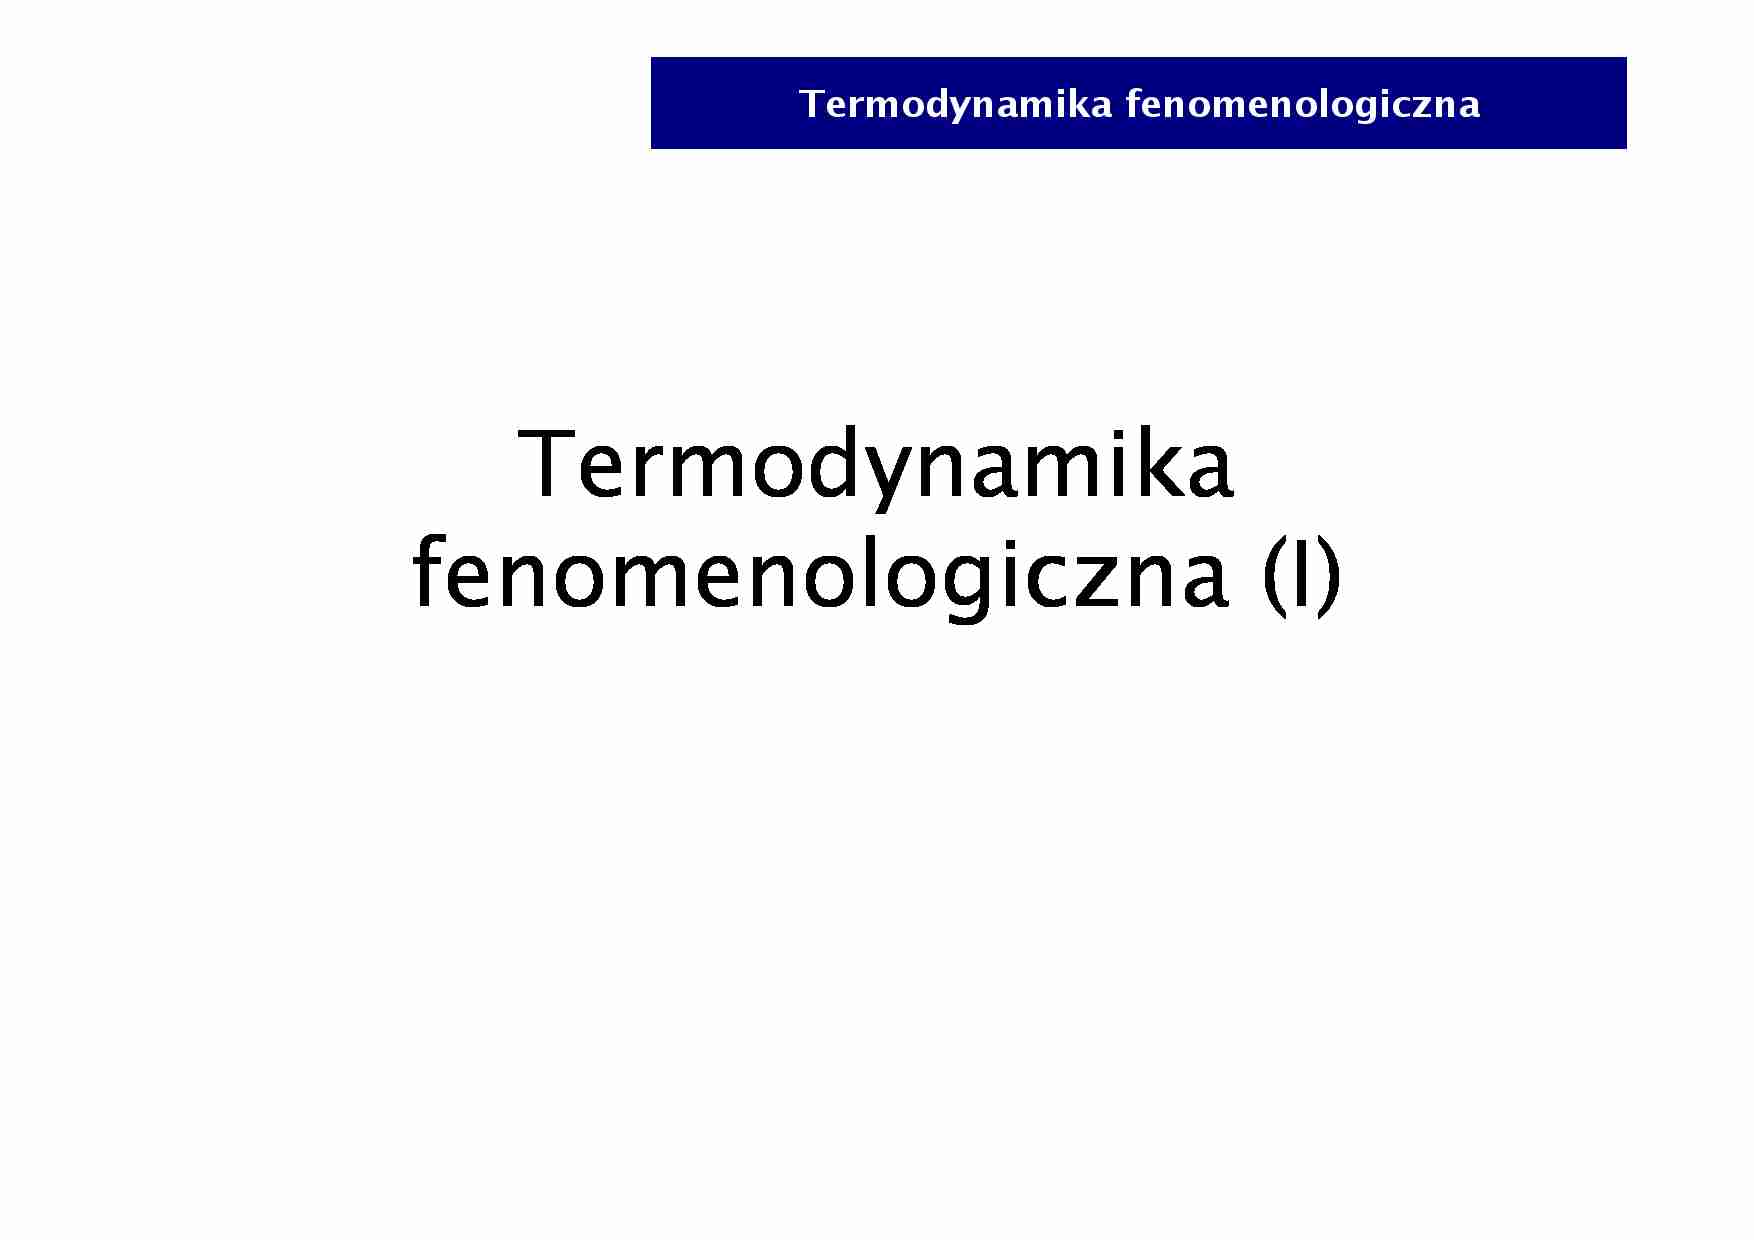 Termodynamika fenemenologiczna - fizyka - strona 1